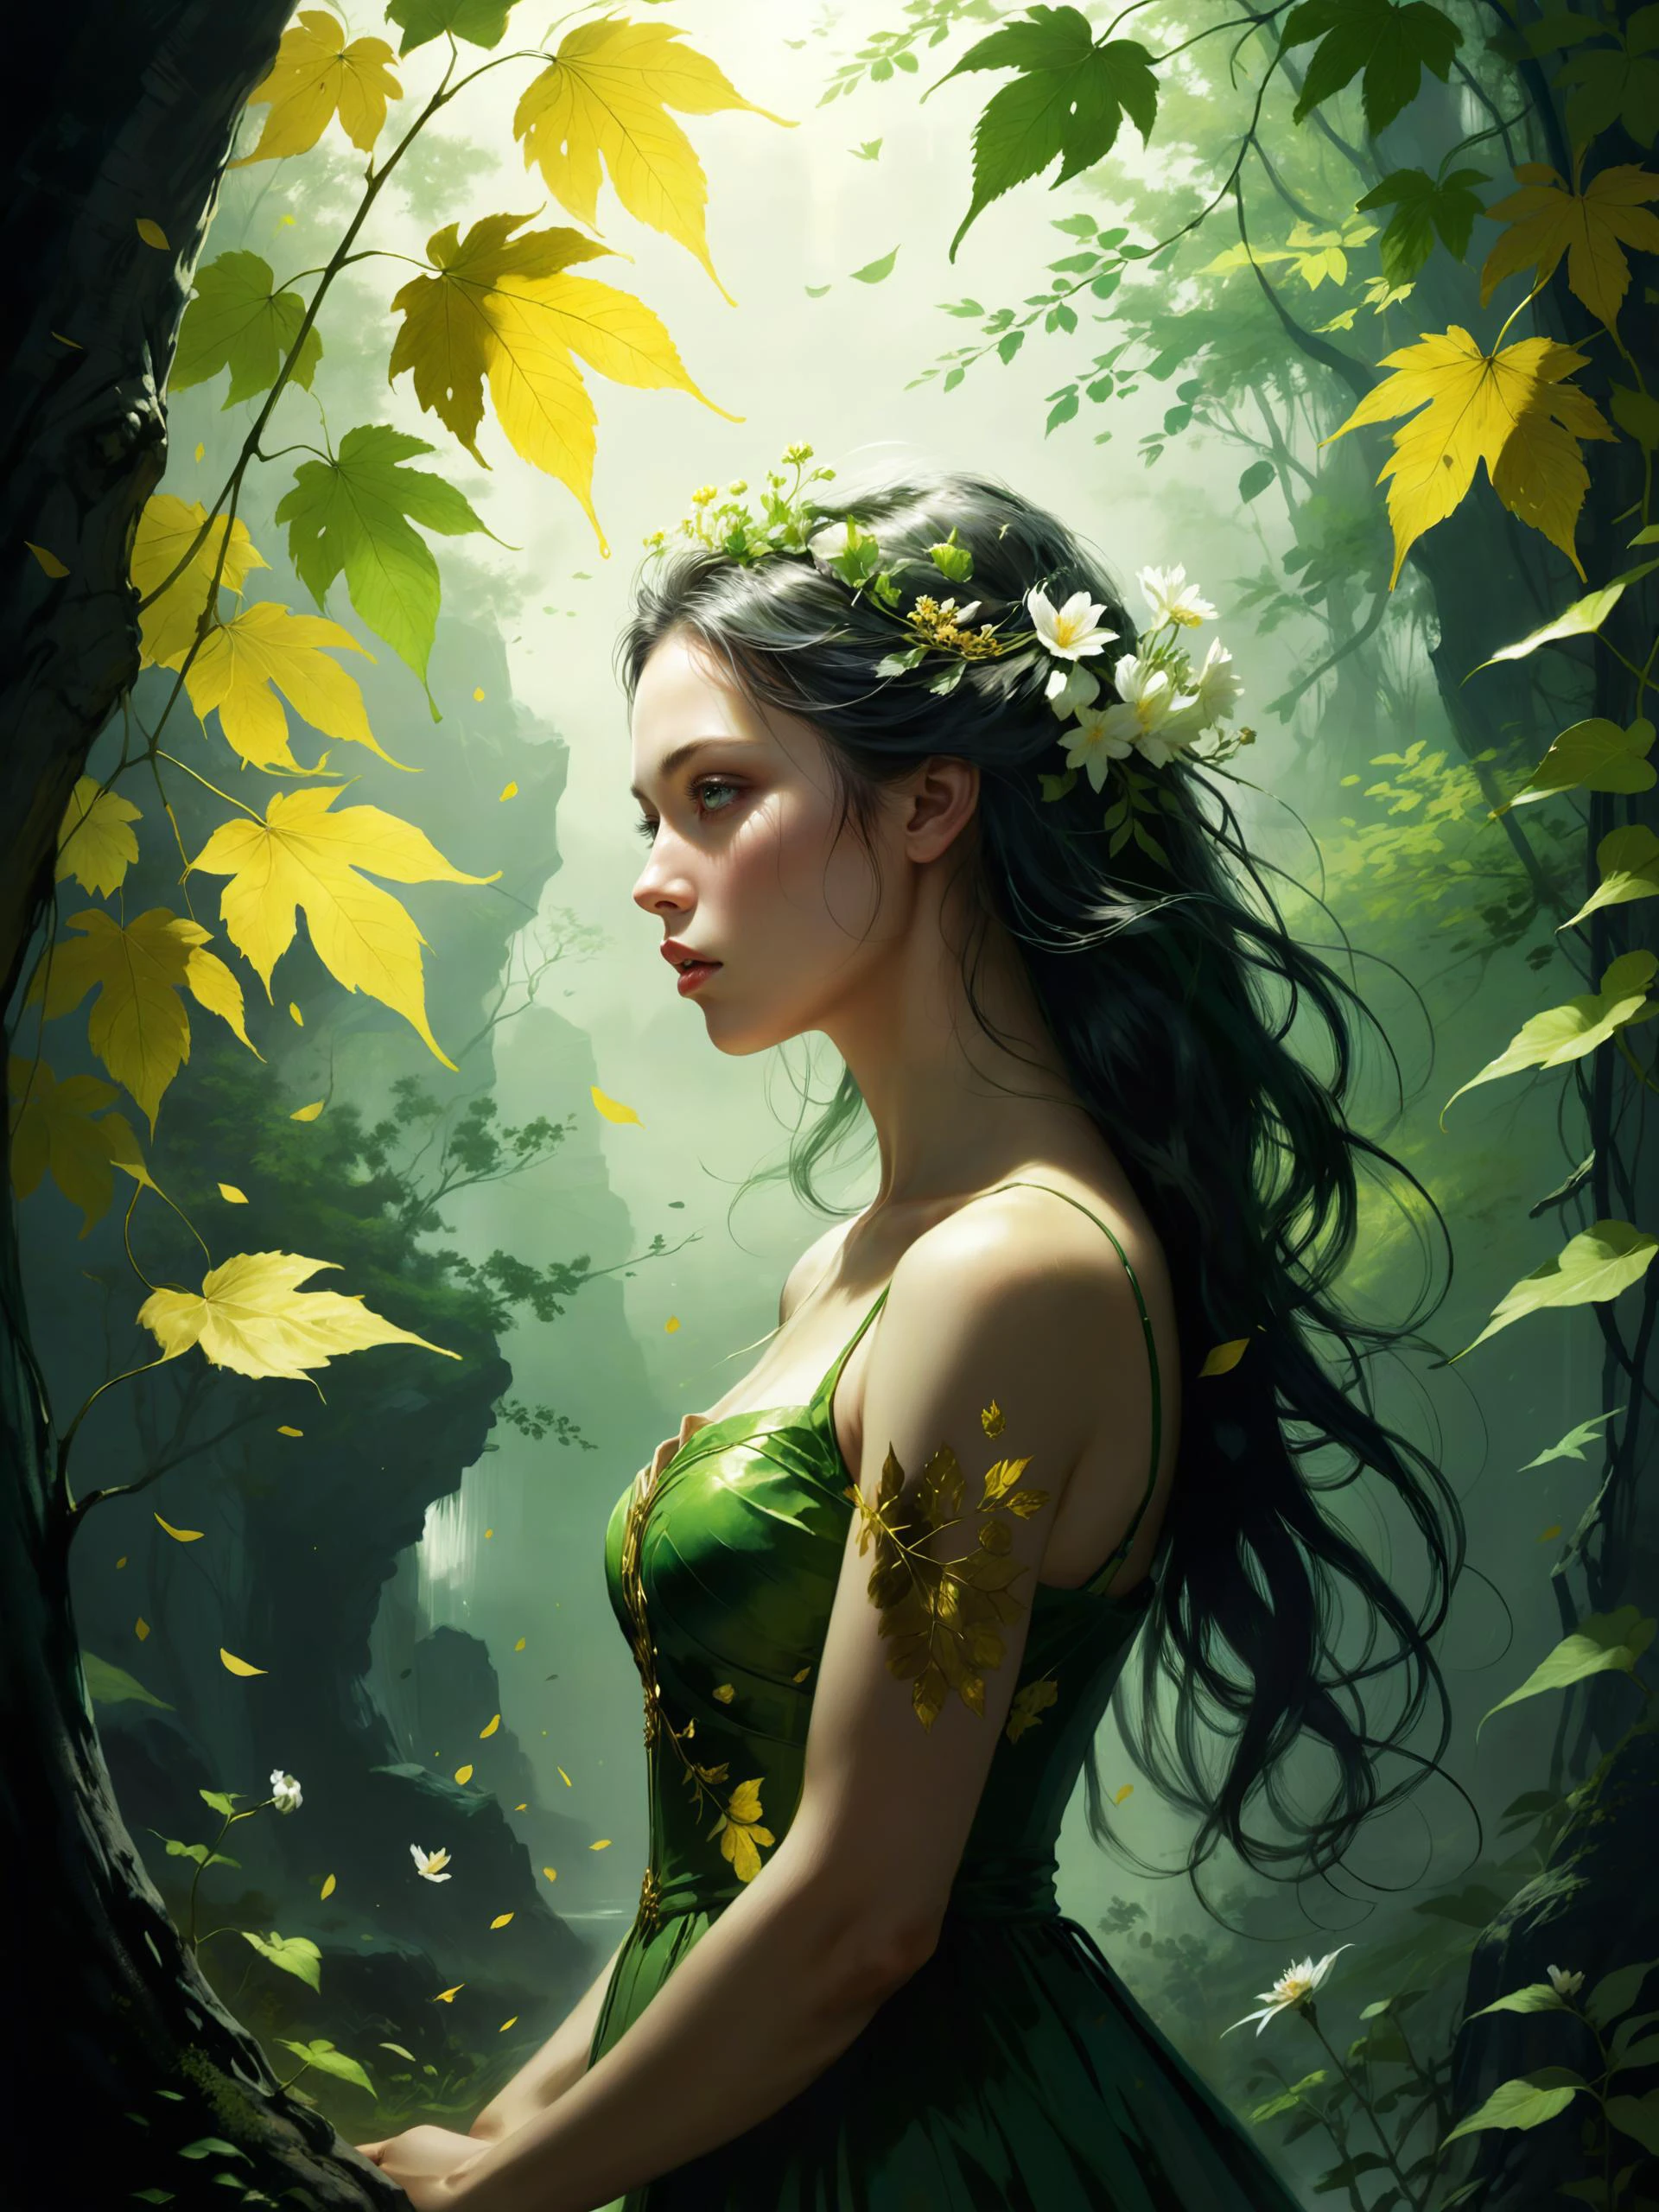 자연의 첫 번째 녹색은 금이다, 그녀의 가장 잡기 힘든 색조, 그녀의 초기 잎사귀는 꽃이야, 하지만 딱 한 시간만, 그러면 잎은 잎으로 가라앉는다, 그래서 에덴은 슬픔에 잠겼어요, 그래서 새벽이 되어 낮이 되다, 아무것도 골드 머물 수, 얼룩덜룩한 빛, 유명한 작품 (요한 크리스티안 달:1.4) 그리고 (이민재:1.4)